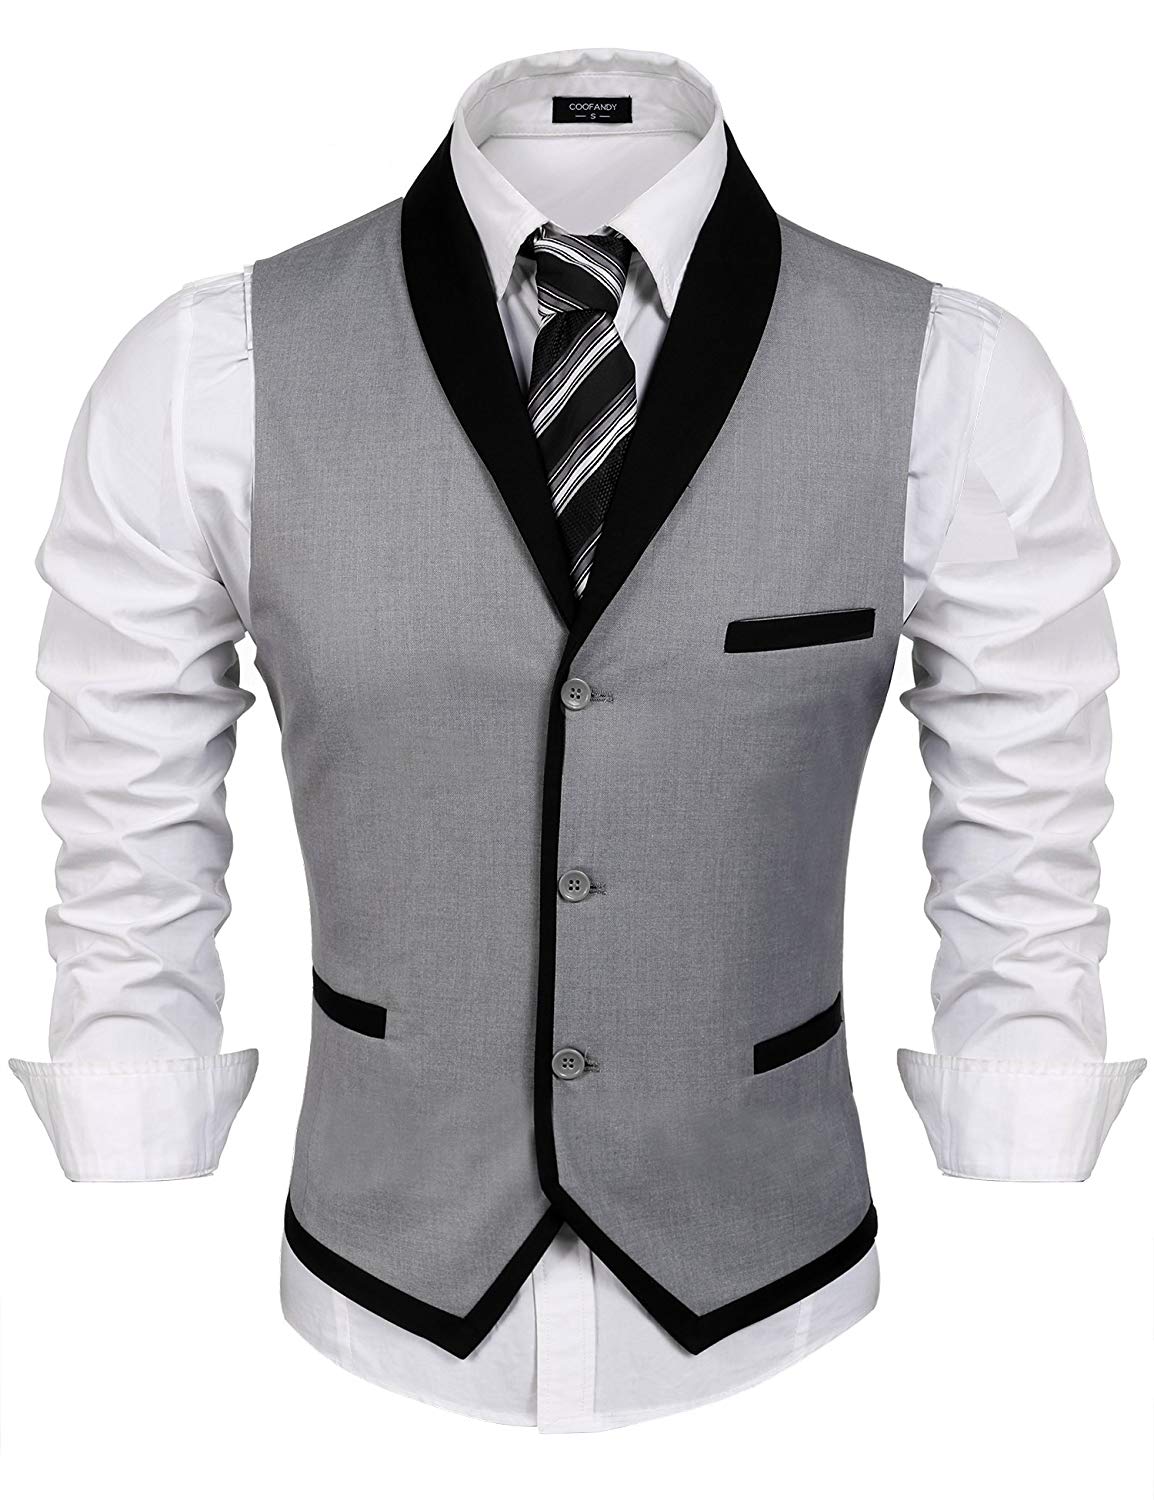 COOFANDY Men's Suit Vest Slim Fit Business Wedding Waistcoat